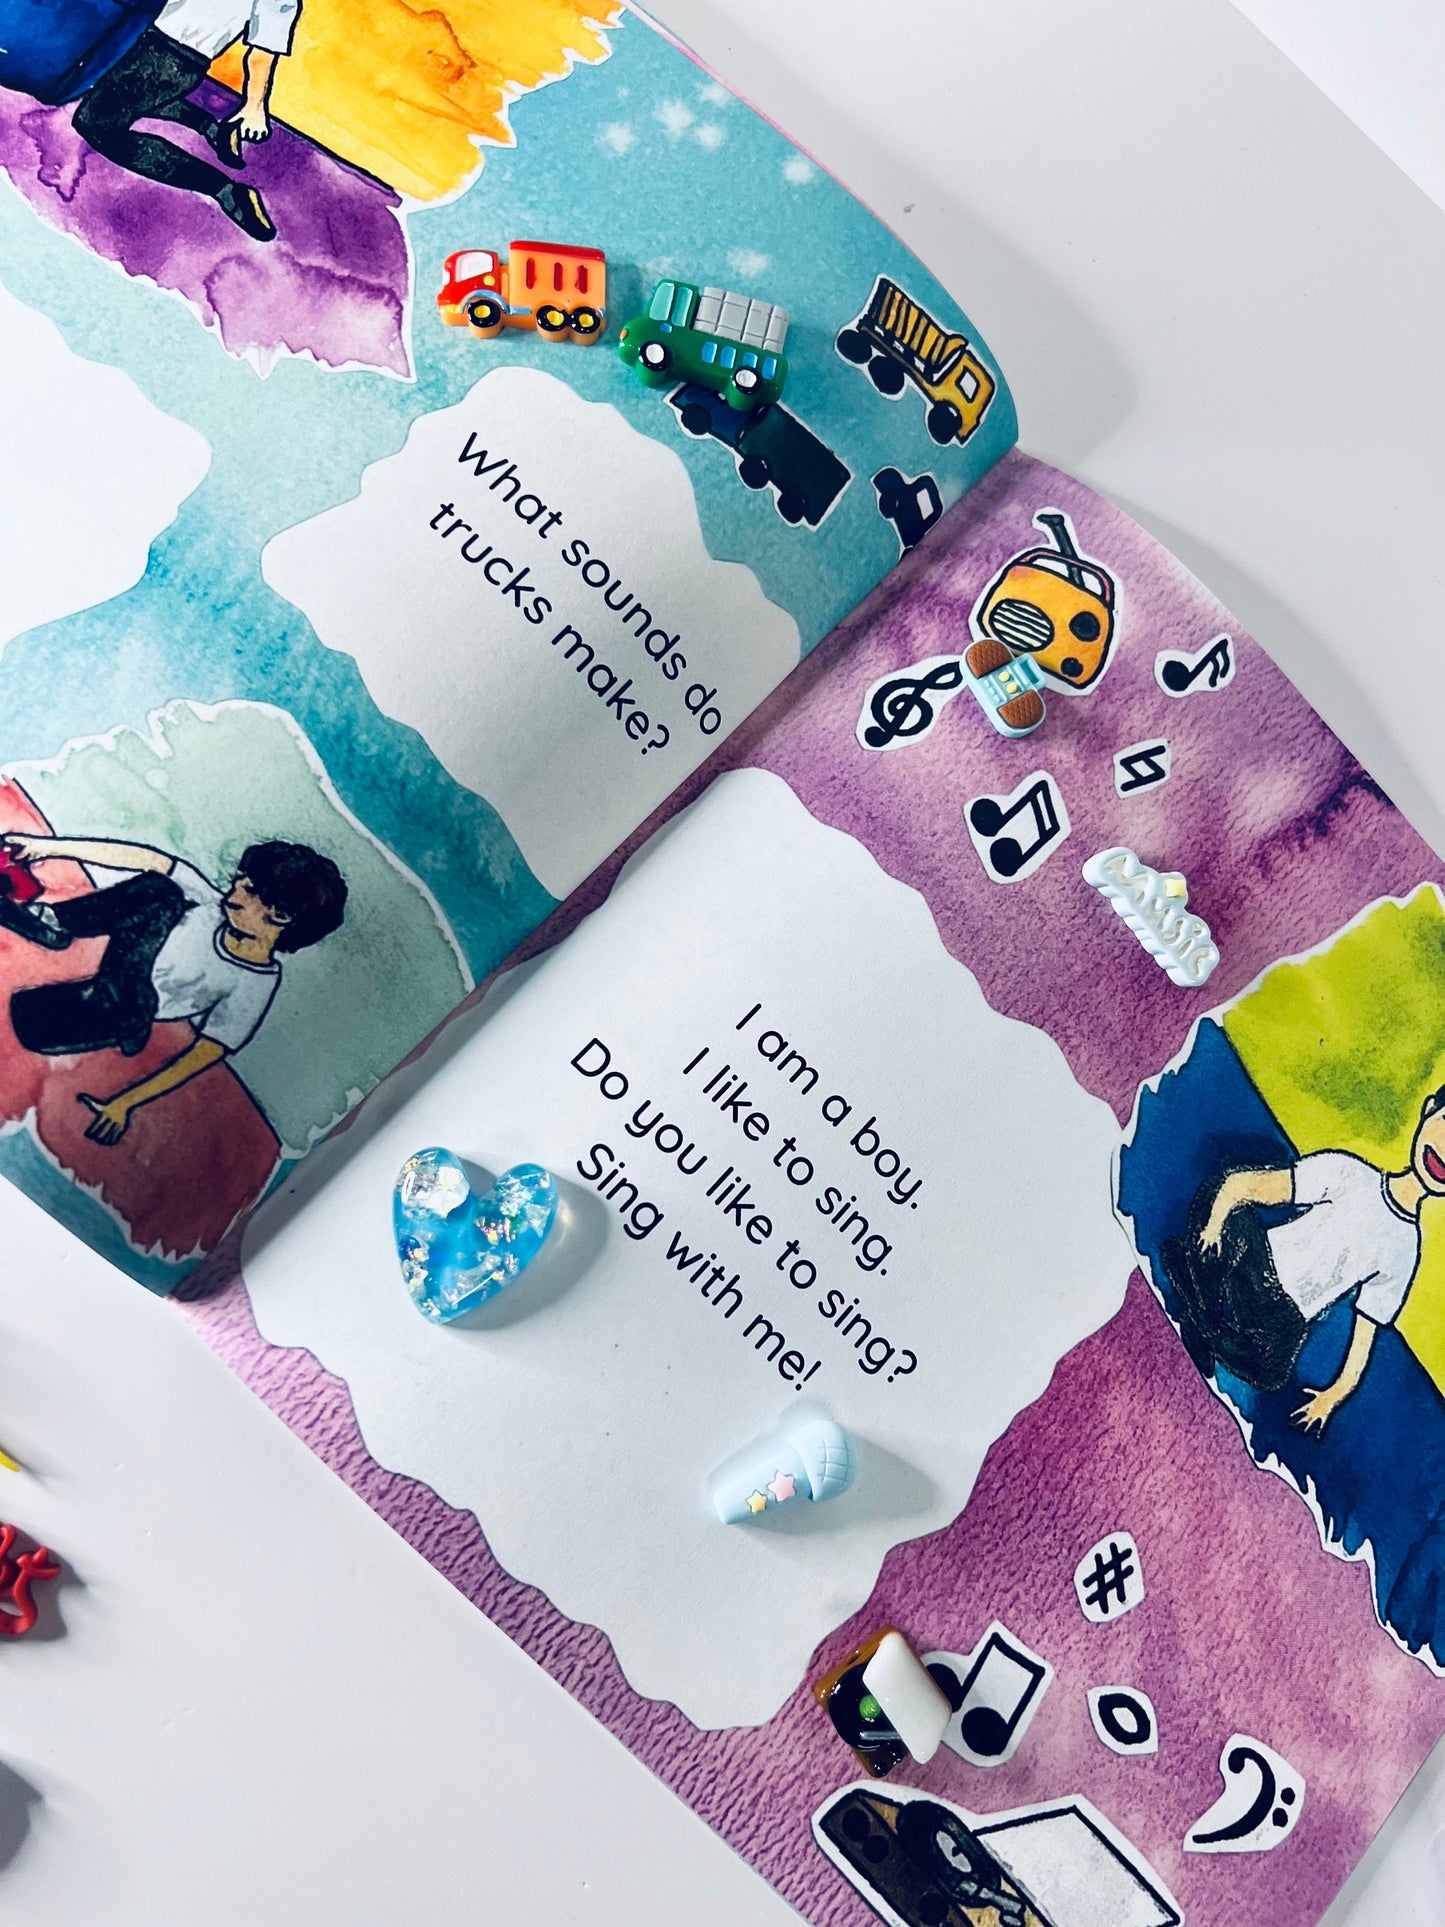 Kit de cuentos - Libro inclusivo con objetos de cuento - Libro sobre ser amable y respetuoso con las diferencias - Libro de neurodiversidad - Los niños también bailan